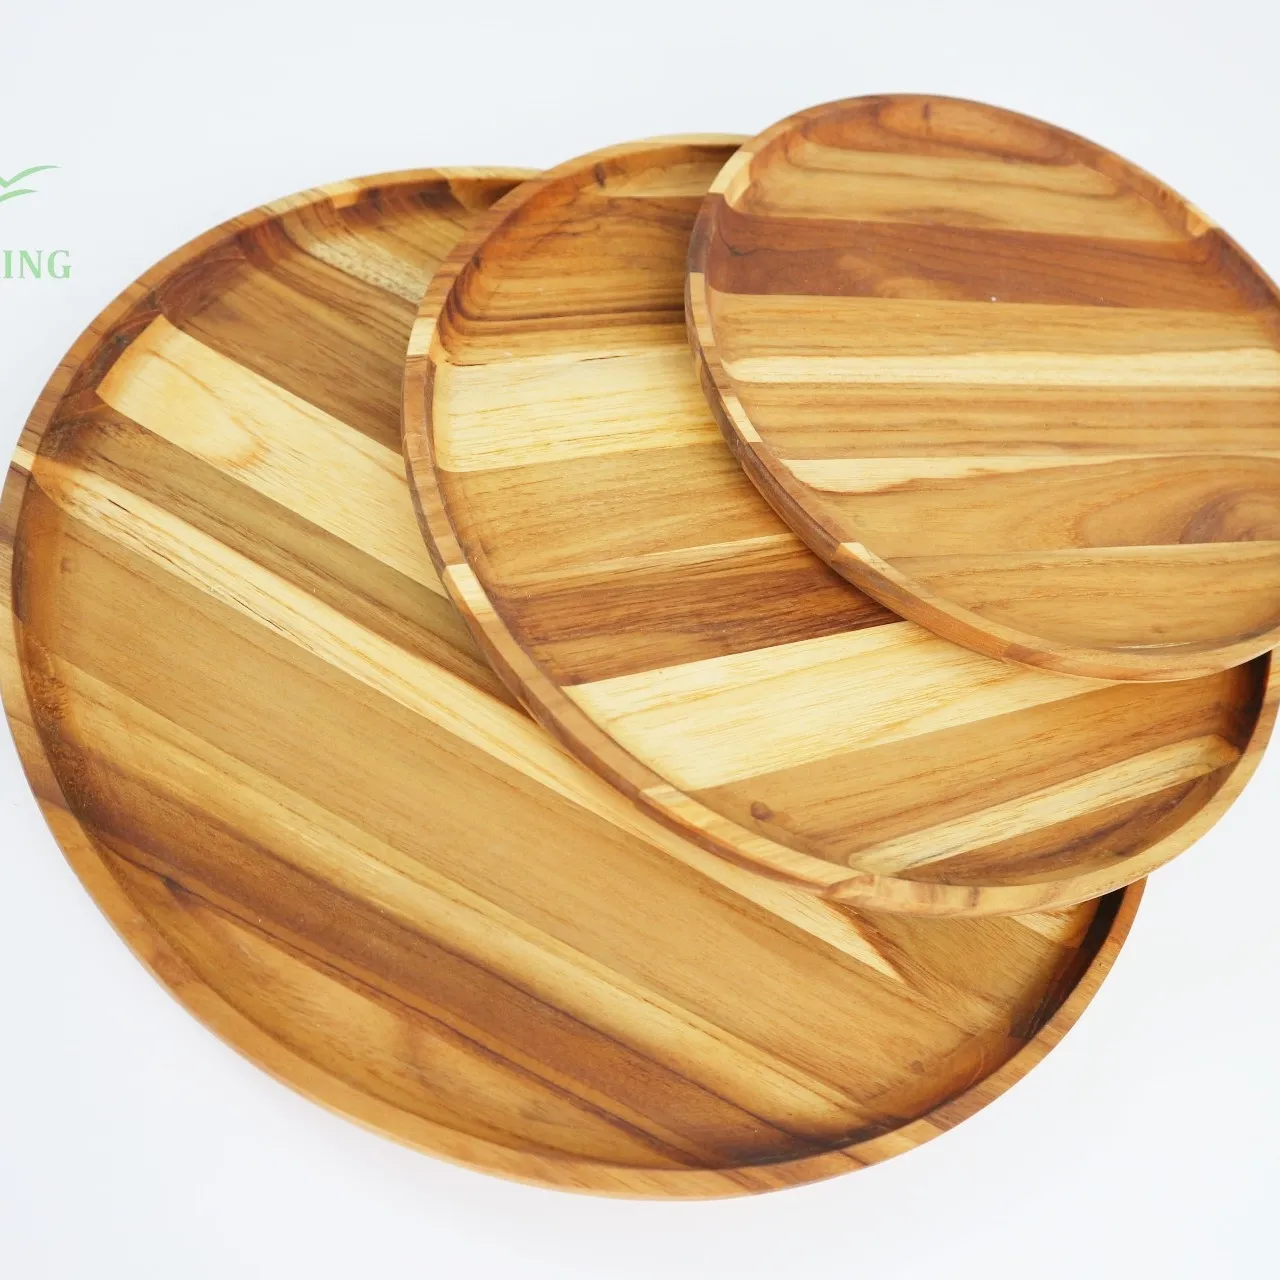 積み重ね可能な台所用品丸いチークのサービングトレイ天然木の色、保管と展示用の丸い木製のトレイ